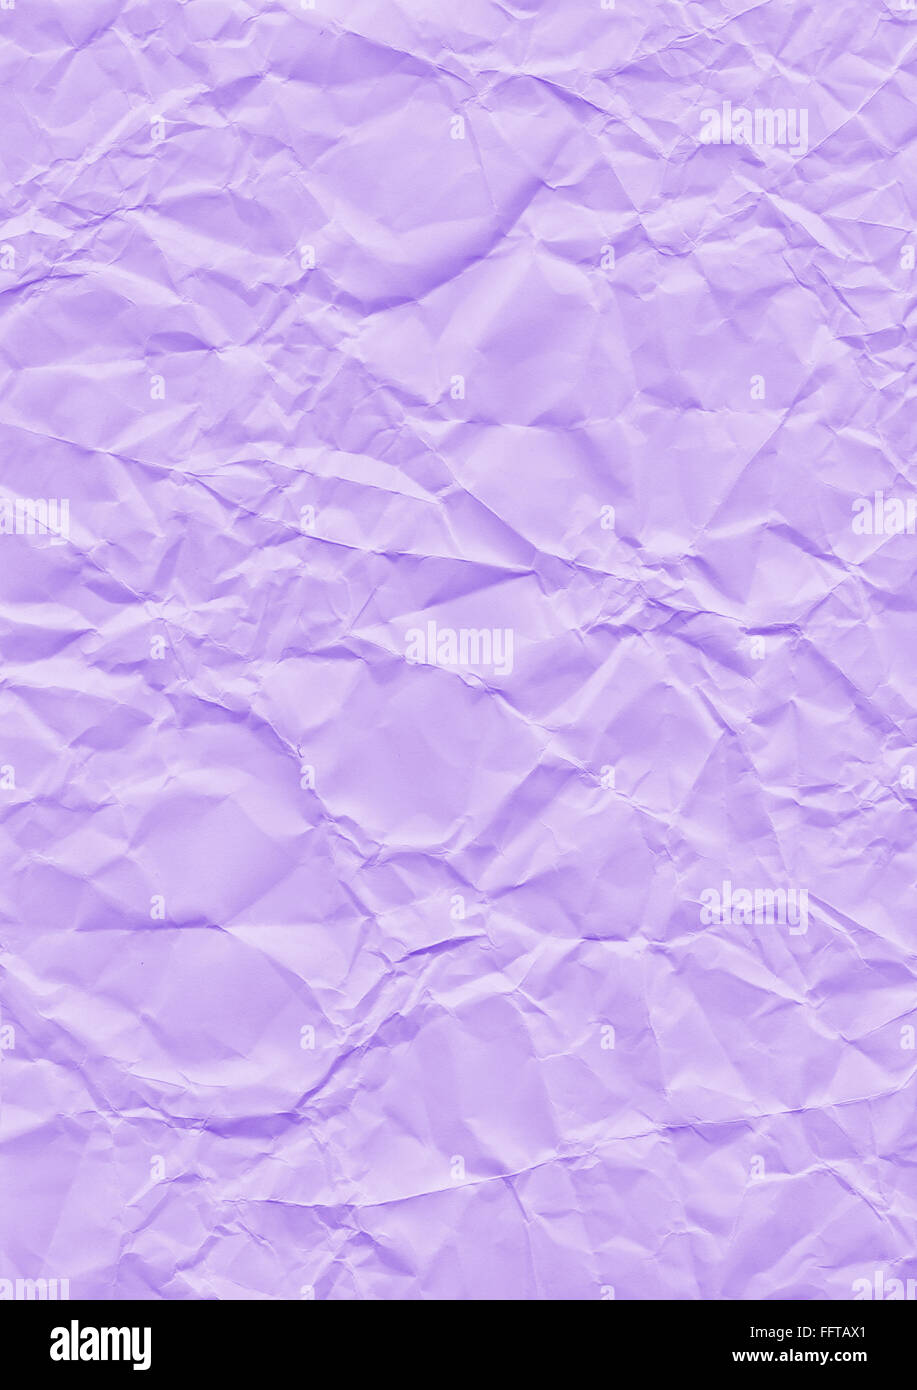 Tejedora Hintergrund lila Papier geknickt Knicke knicken zerknittert Knautsch zerknautscht kaputt gefaltet falten faltig Textur S Foto de stock